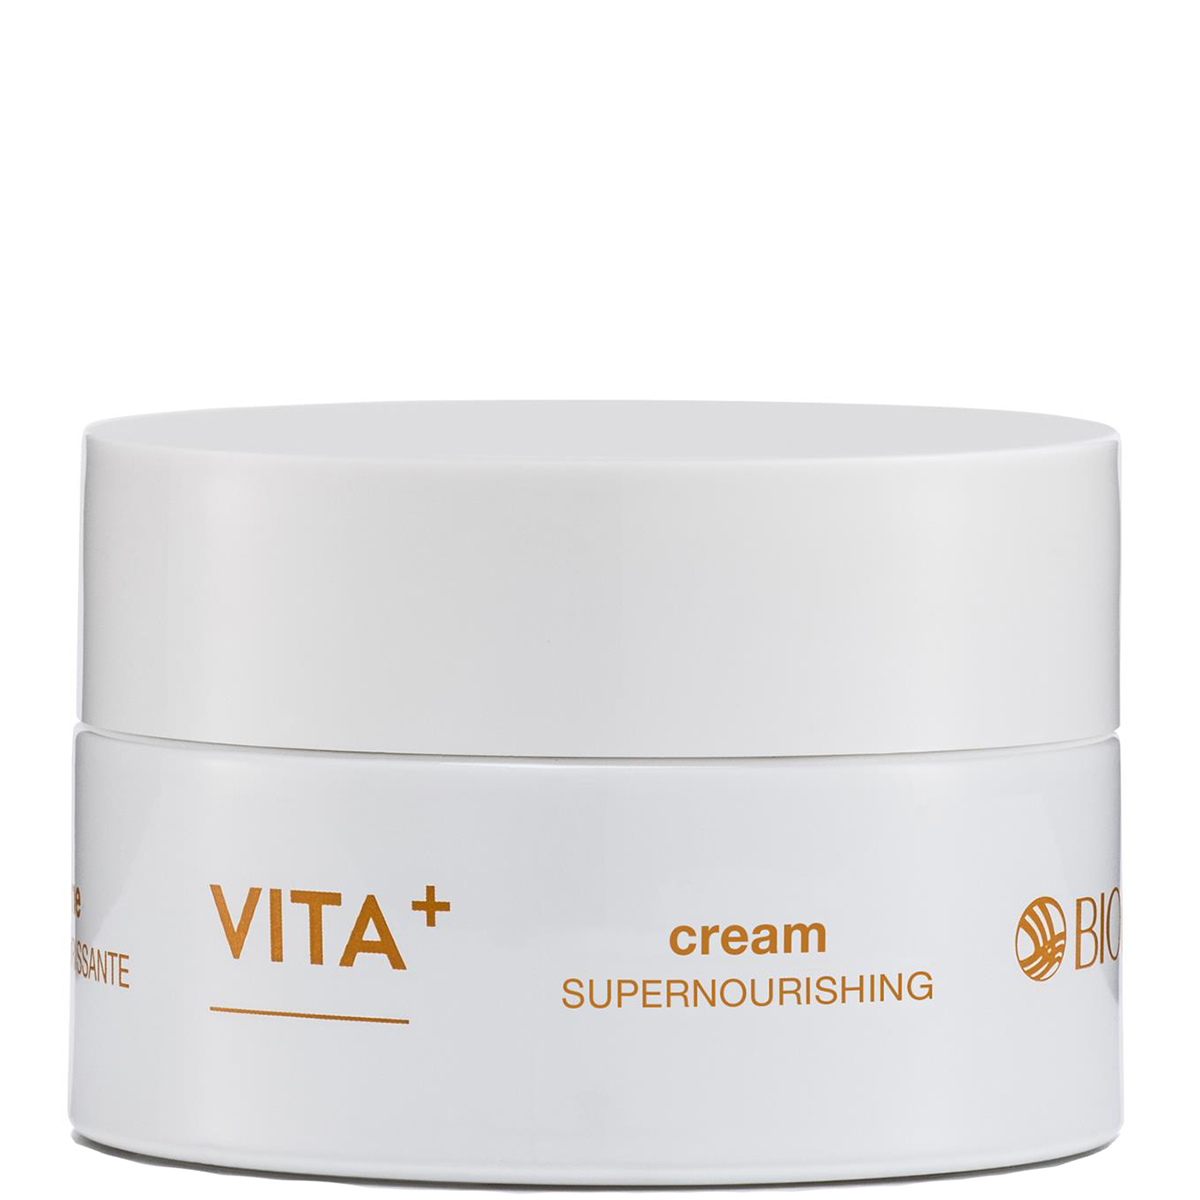 Bioline Vita+ Supernourshing Cream